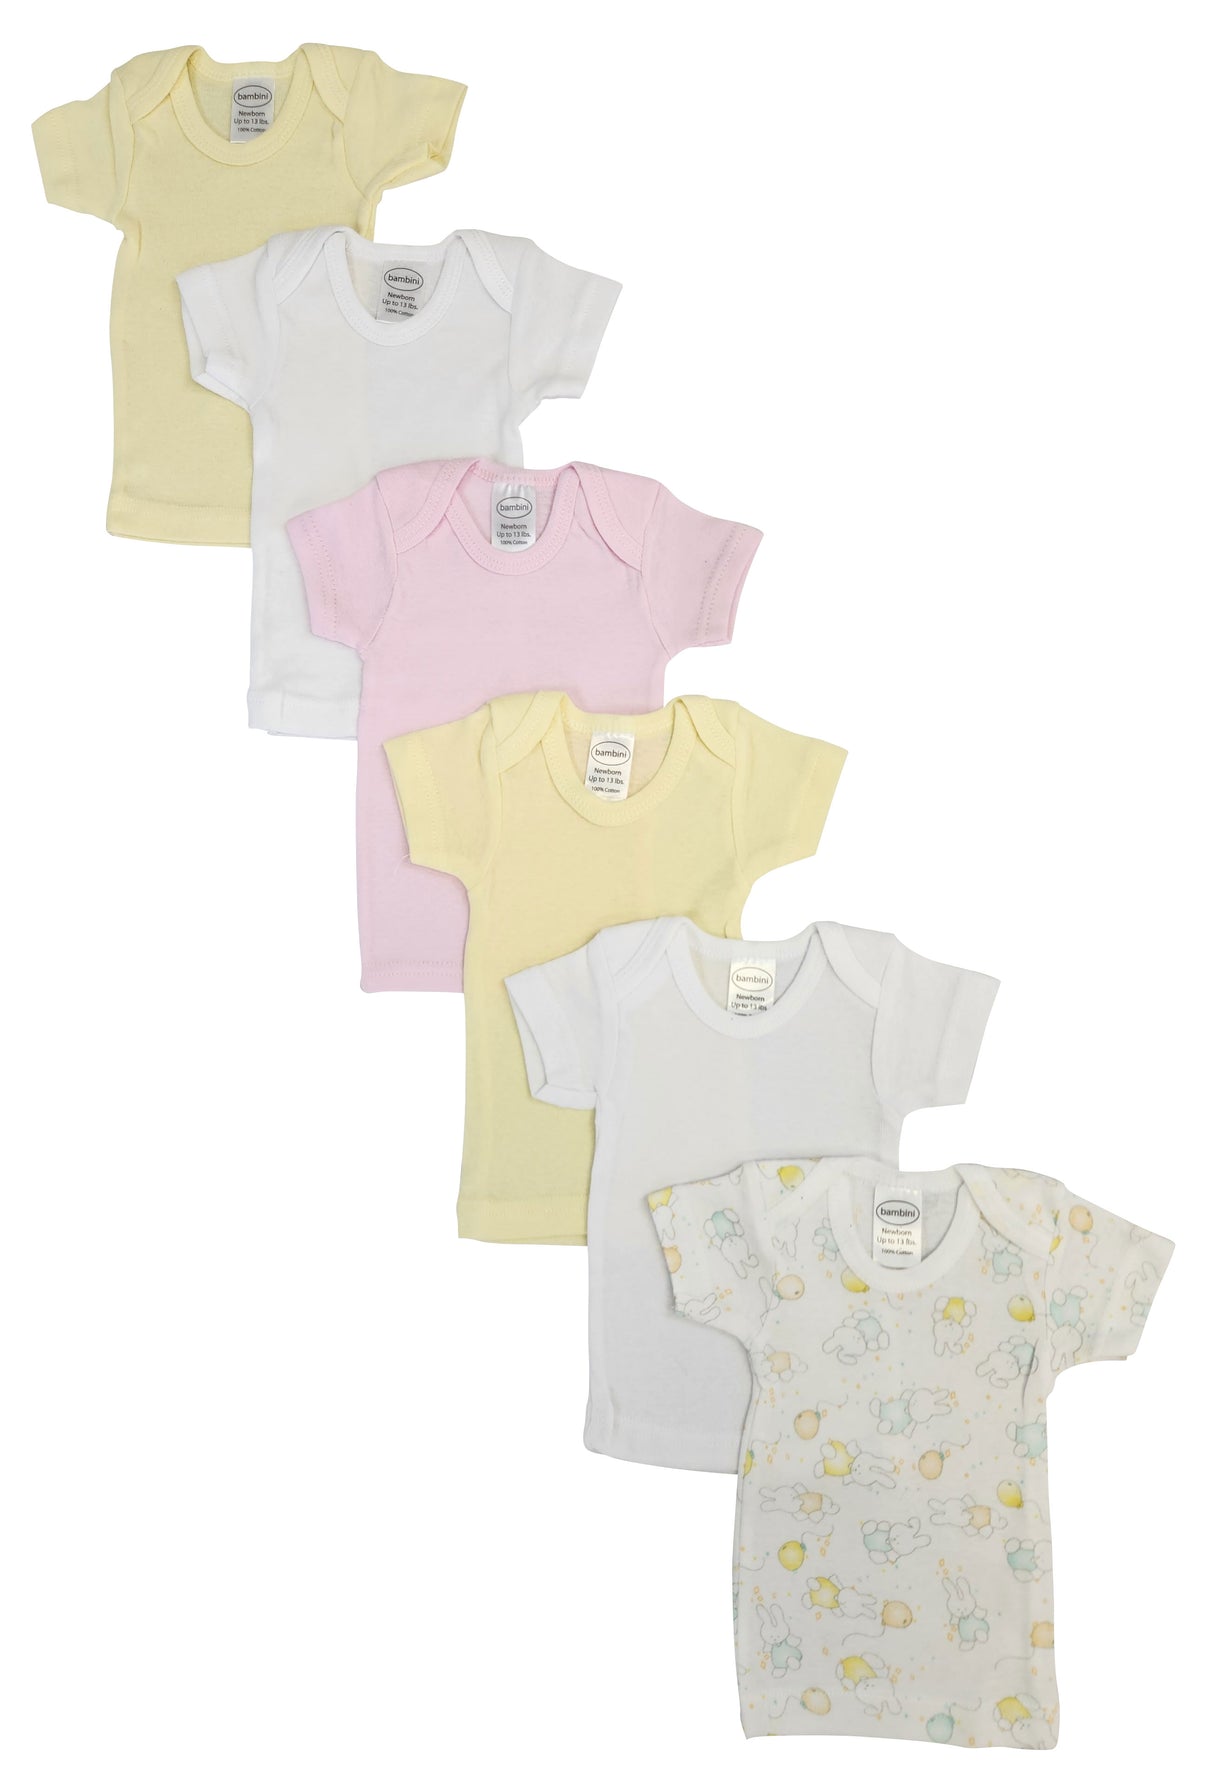 Unisex Baby 6 Pc Shirts